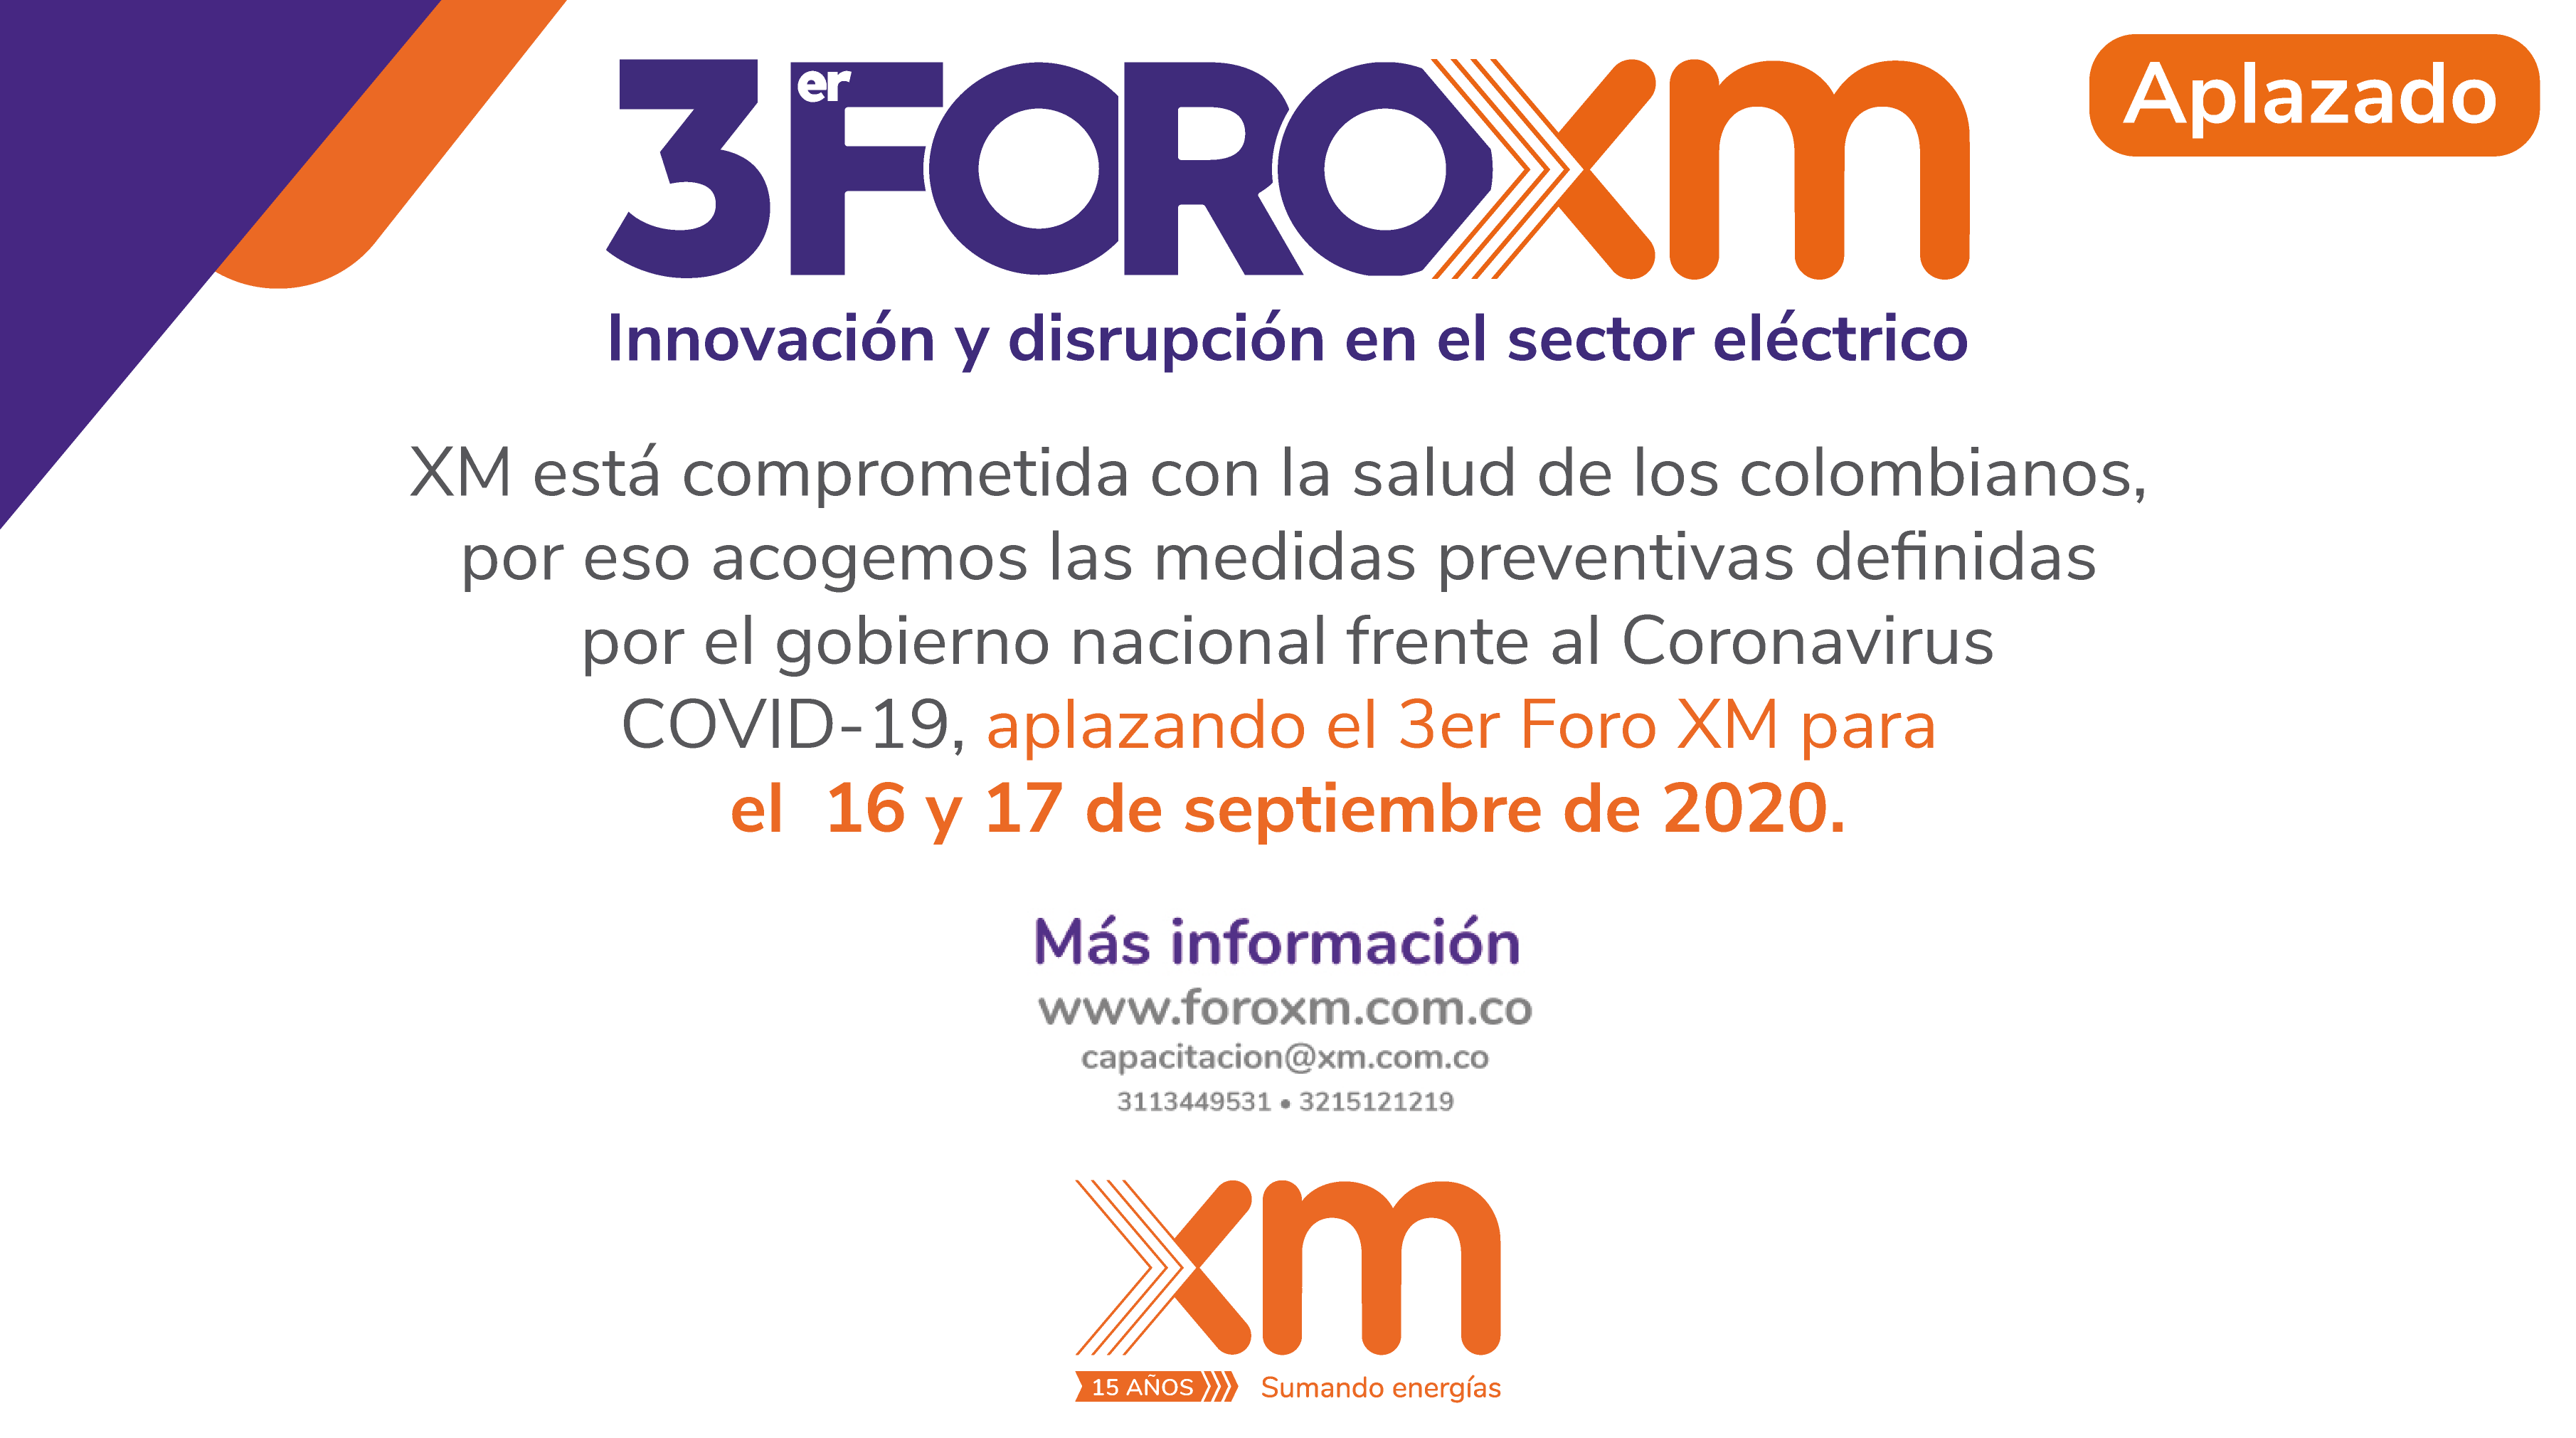 3° Foro XM, innovación y disrupción en el sector eléctrico